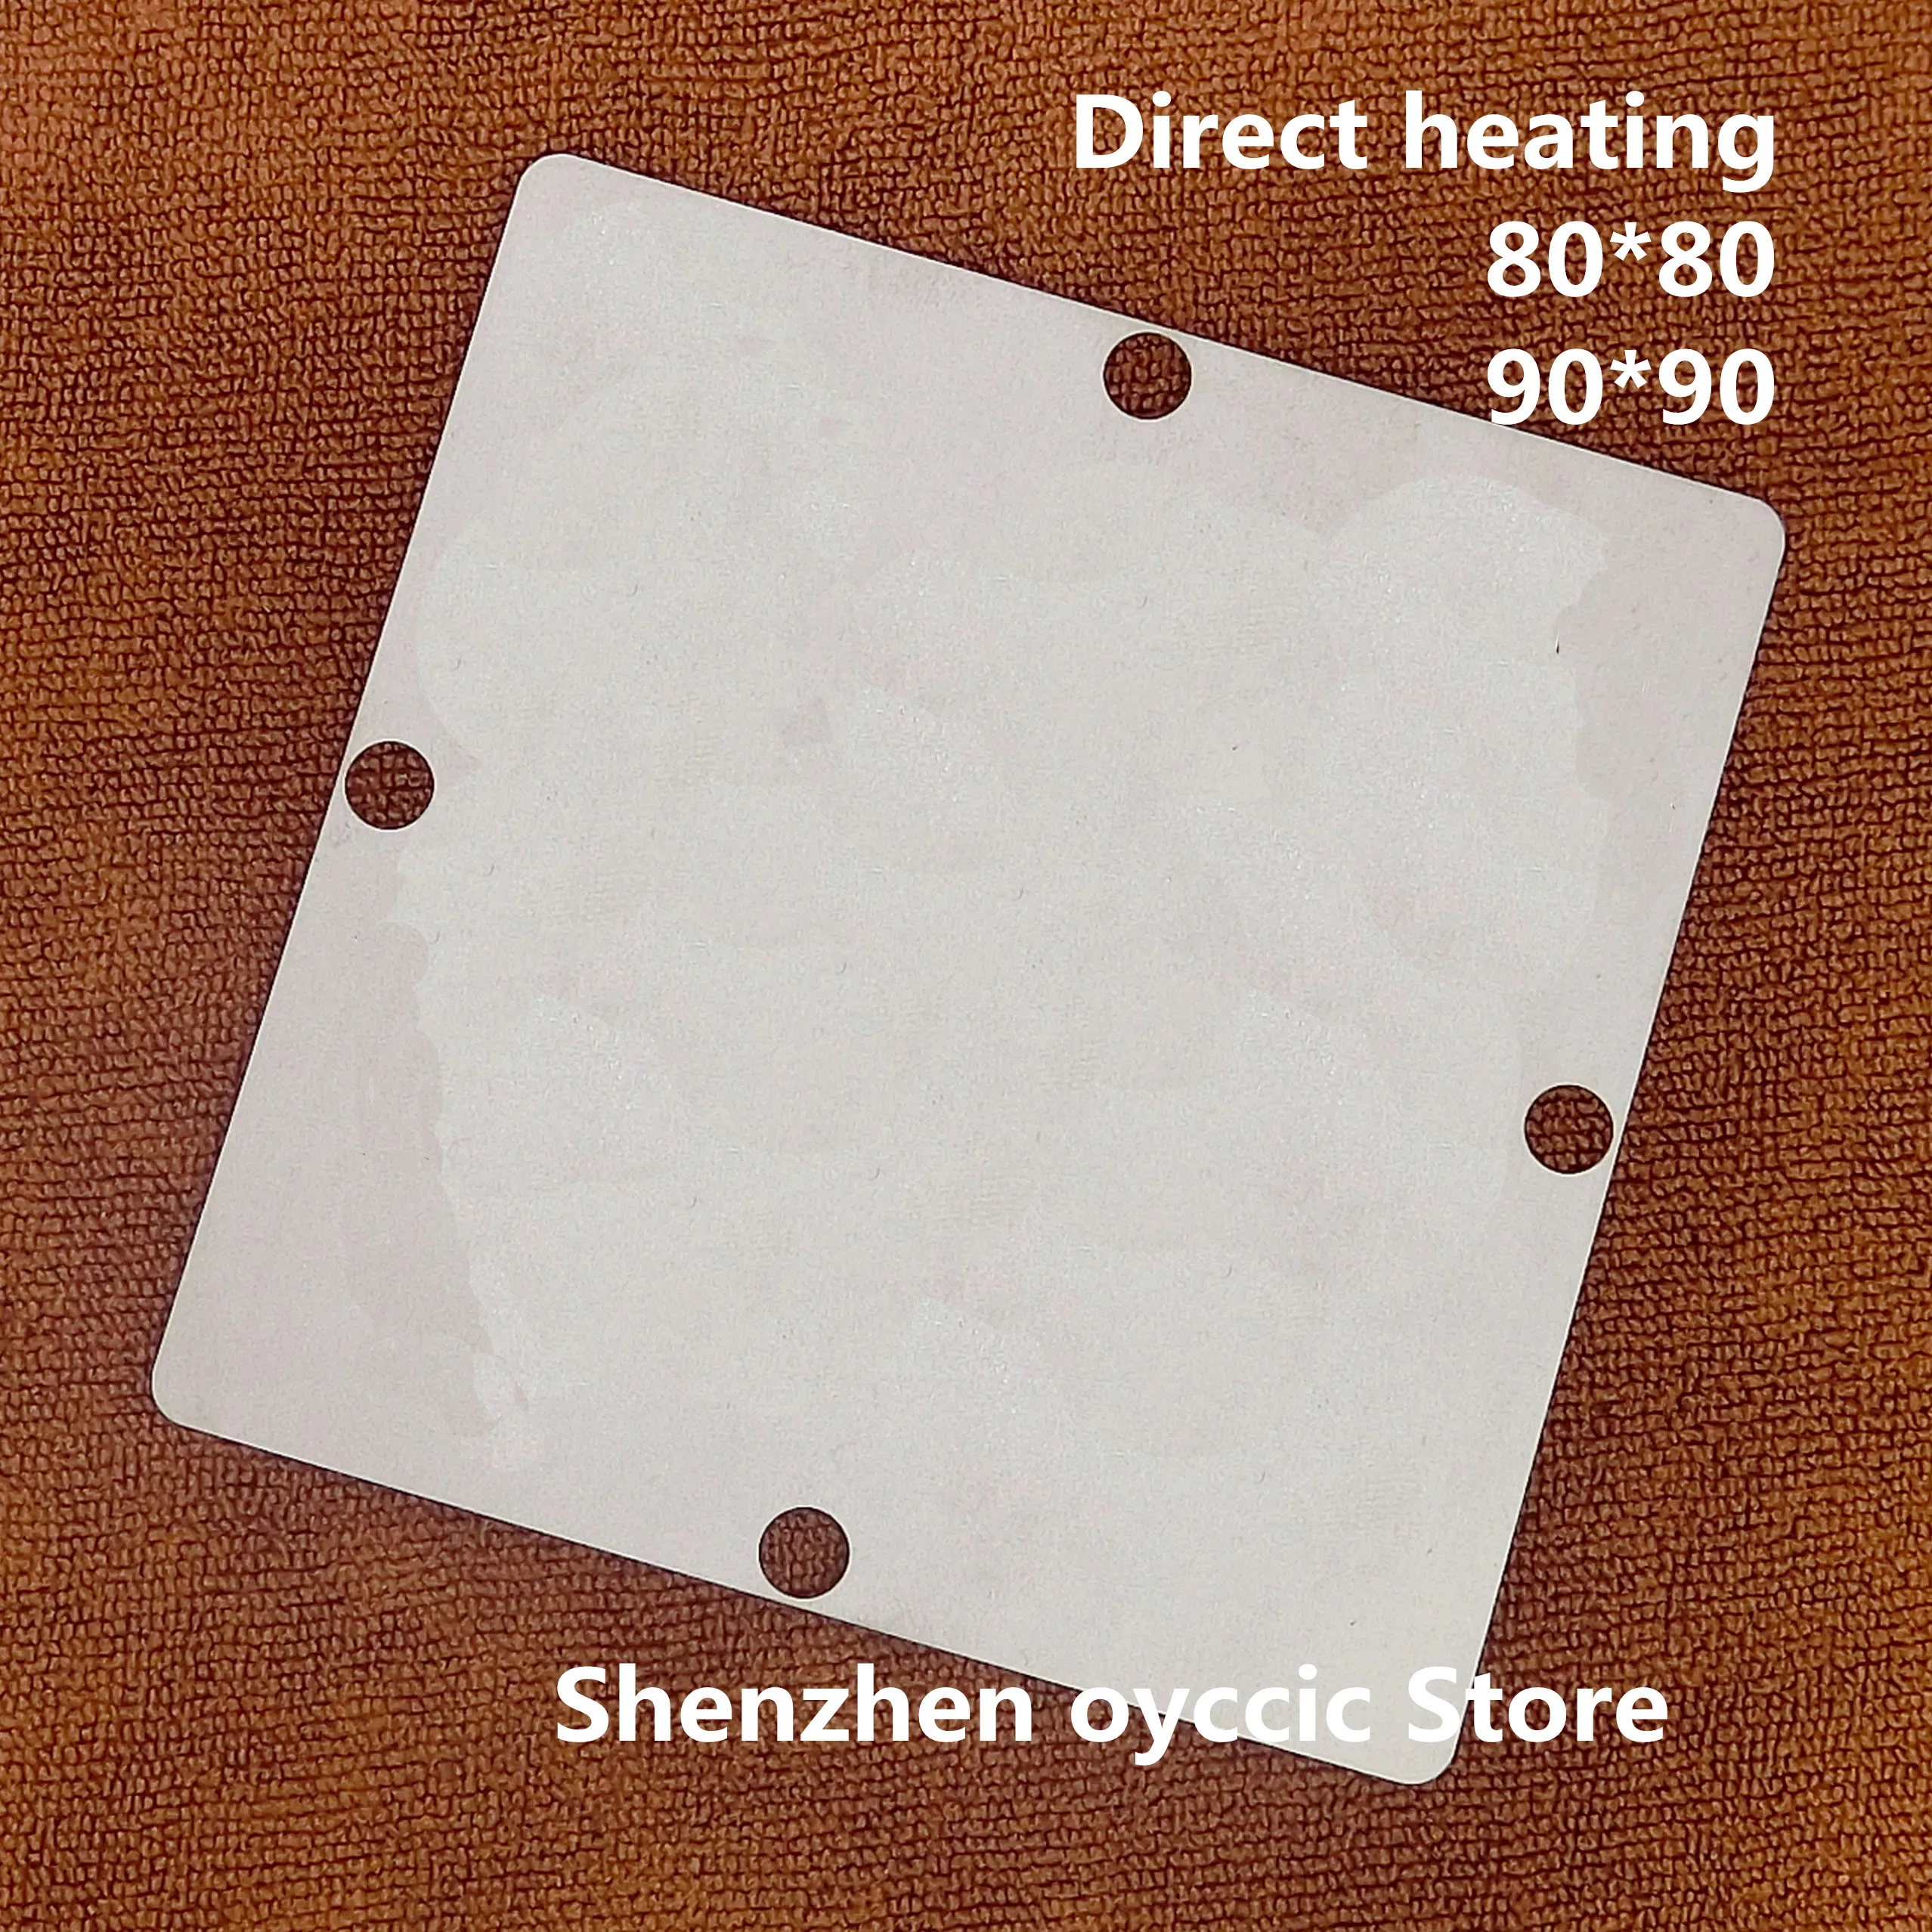 

Direct heating 80*80 90*90 LGE3159A-LF-S1 LGE3159A -LF-S1 BGA Stencil Template